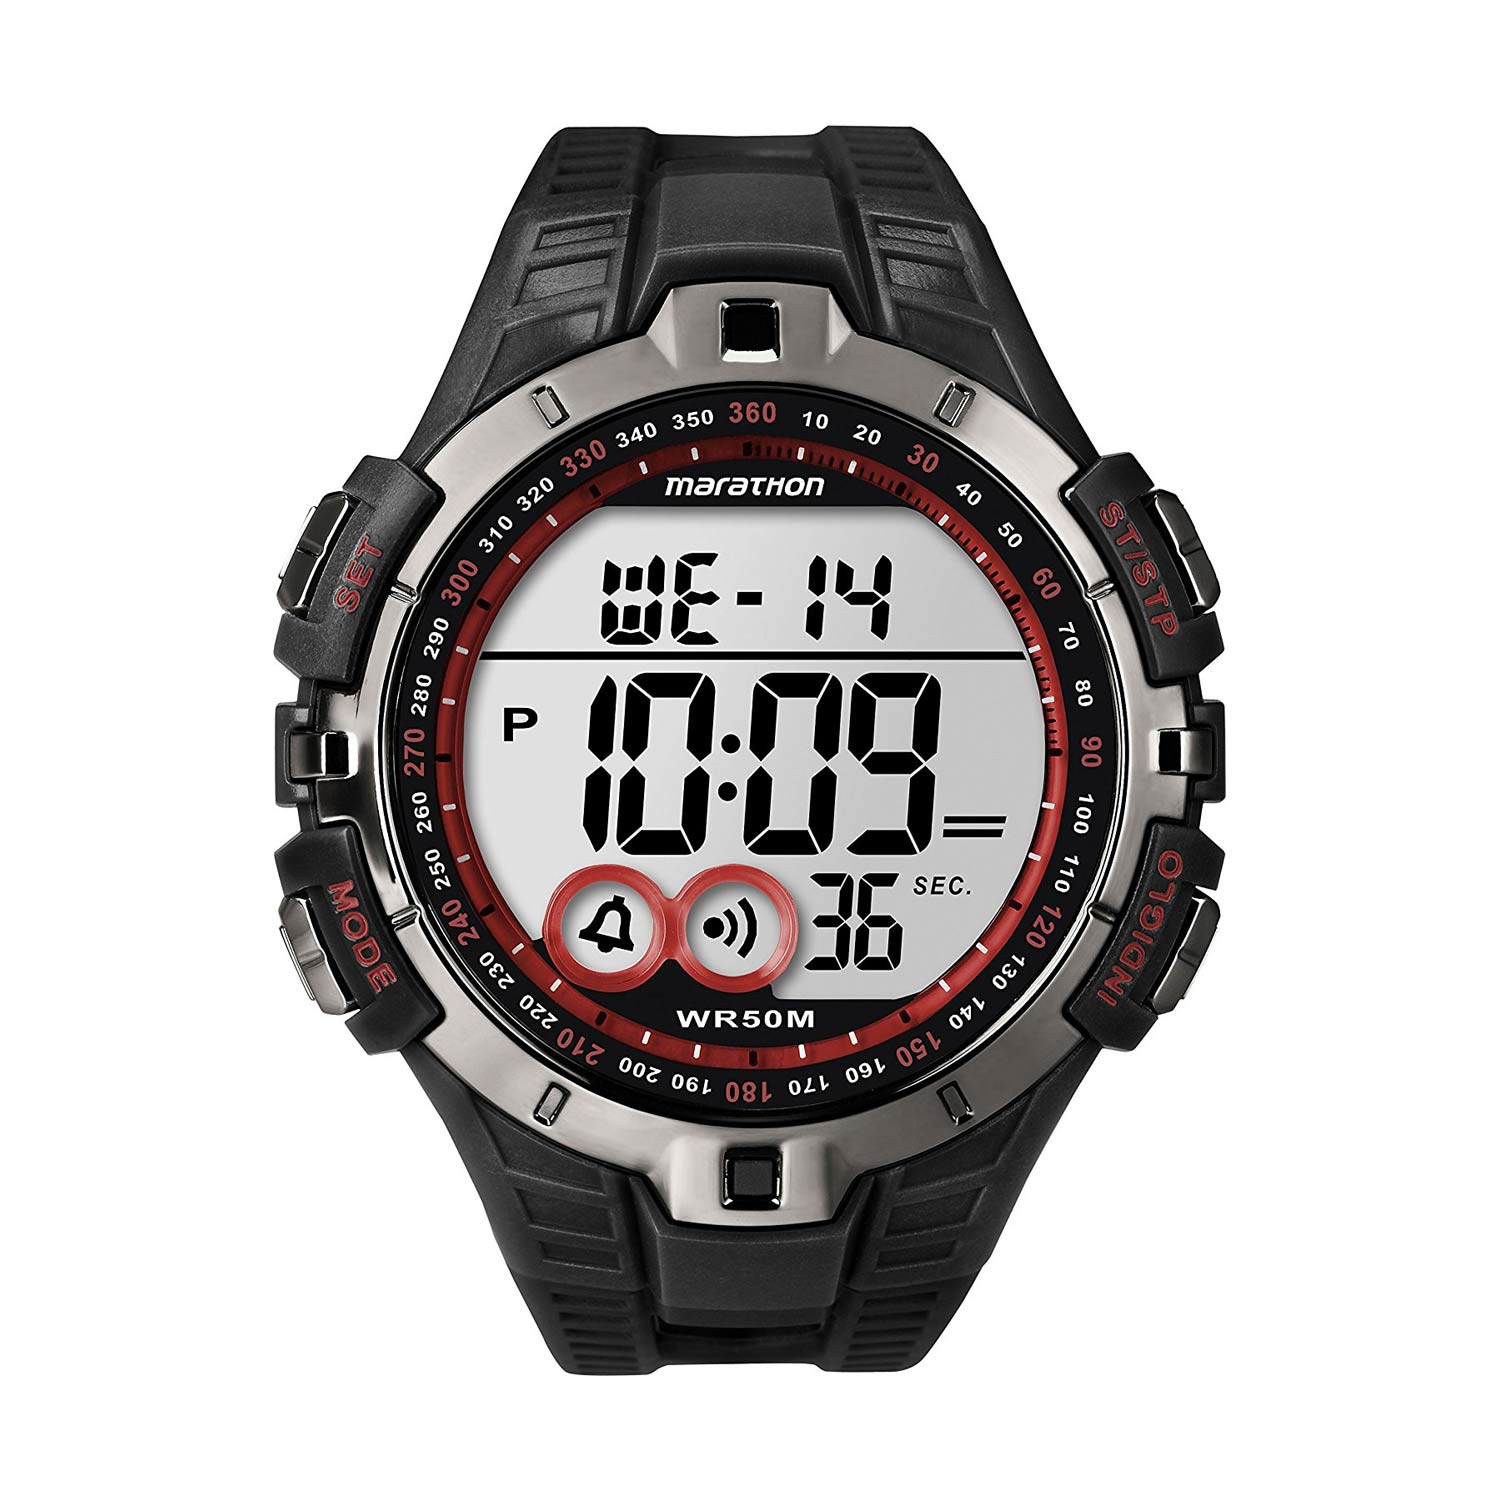 Timex-Marathon-T5K423-sportliche-Digitaluhr-in-Schwarz-mit-Chronograph-und-Quarzuhrwerk